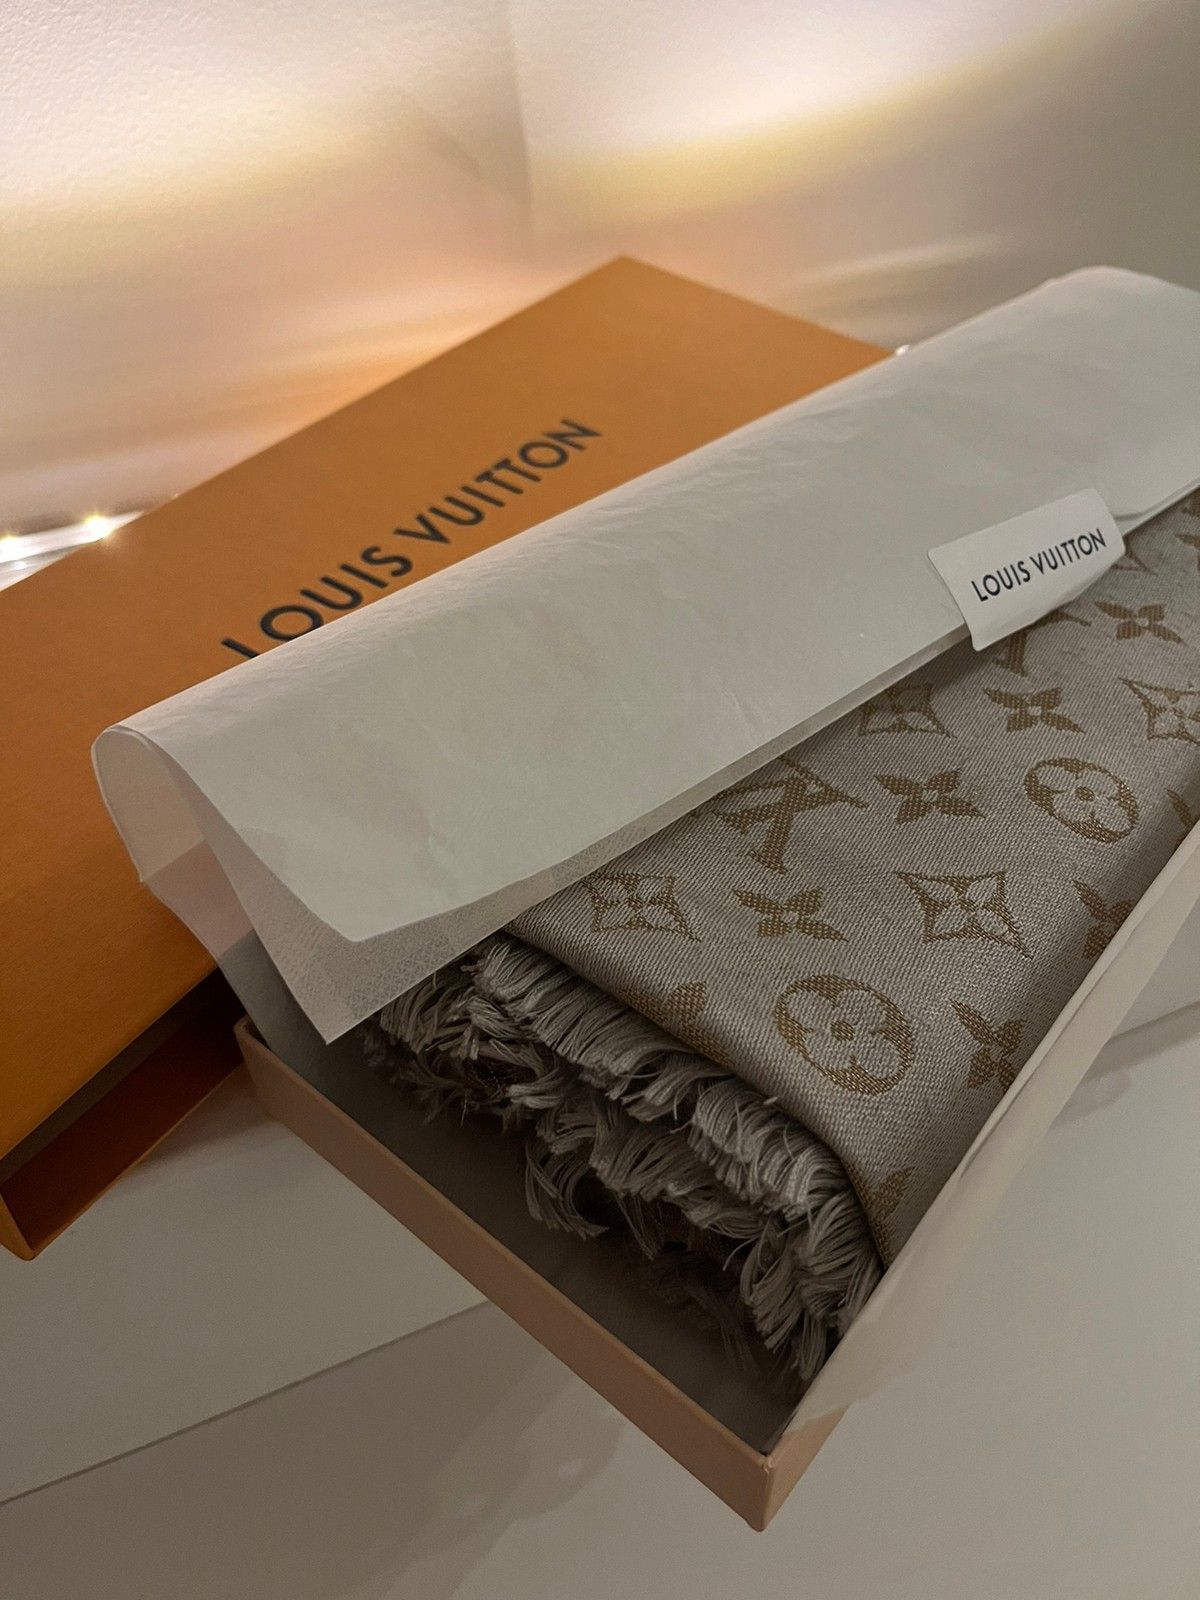 Louis Vuitton: Skjerf i Blekrød nå opp til −35%